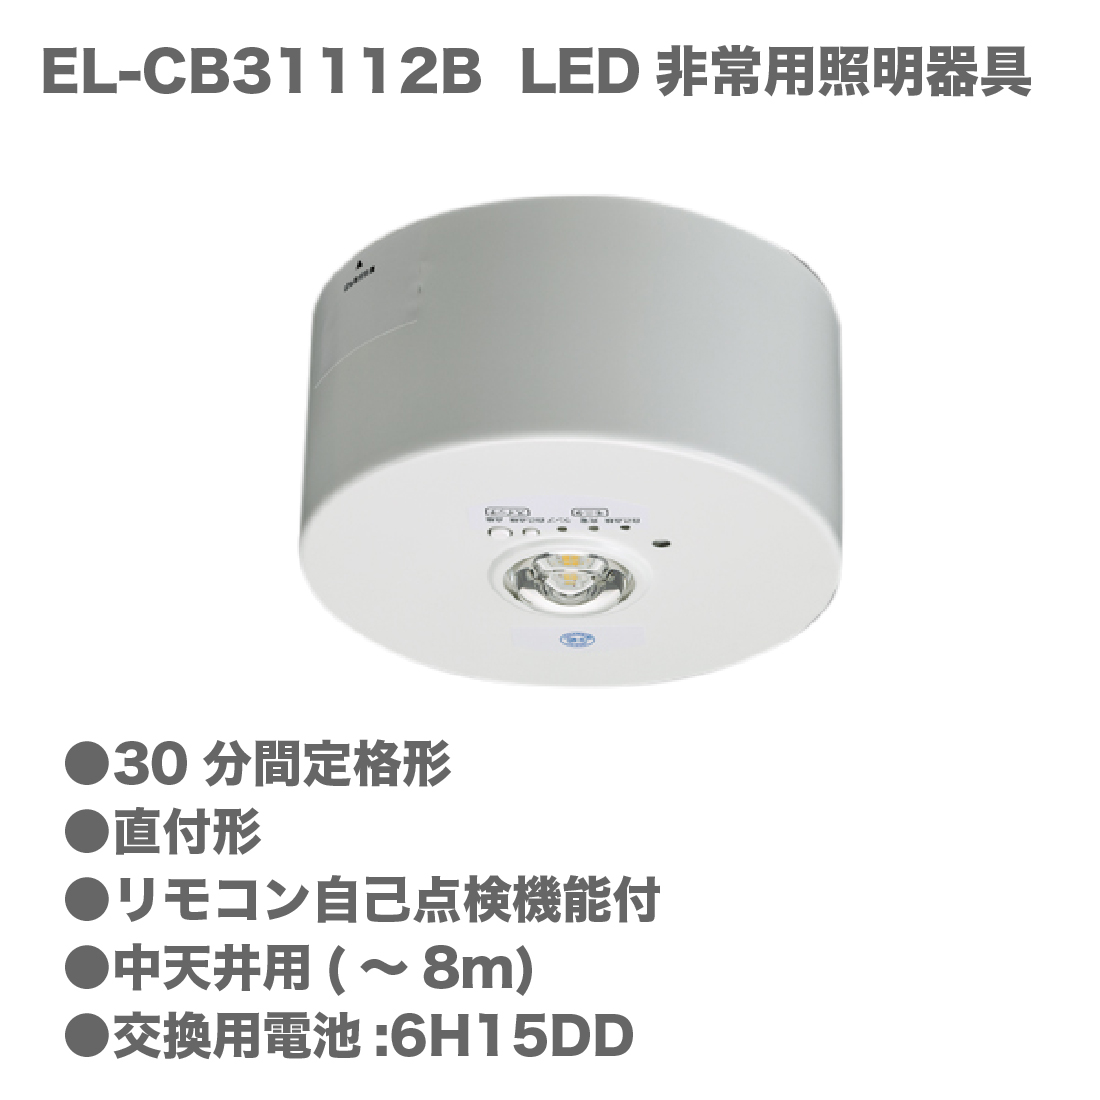 １個売り　三菱LED非常用照明器具
EL-CB30111B